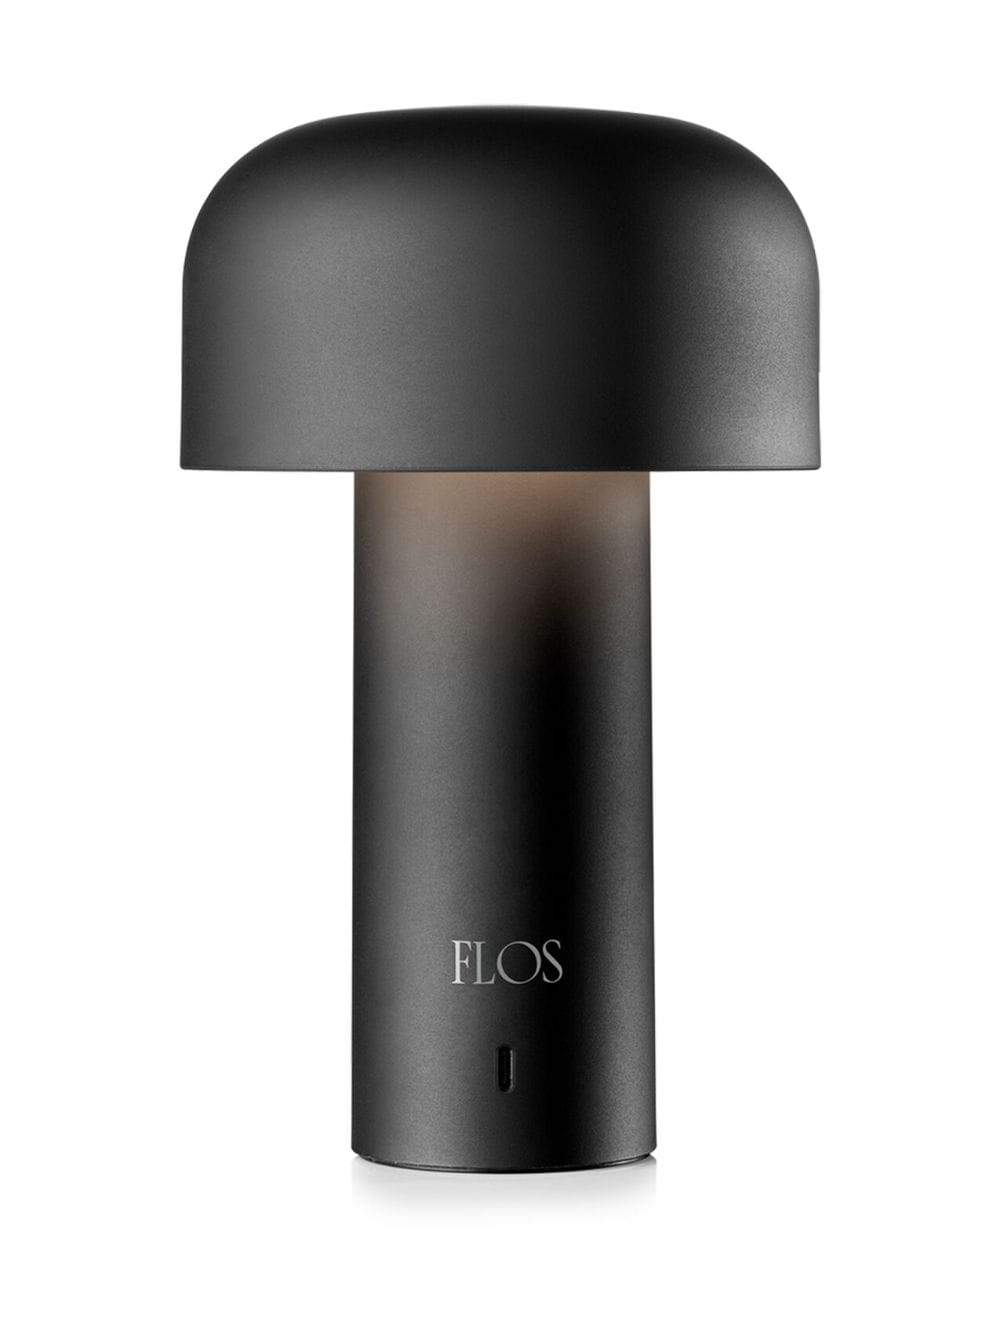 Flos - Bellhop Table Lamp Grey